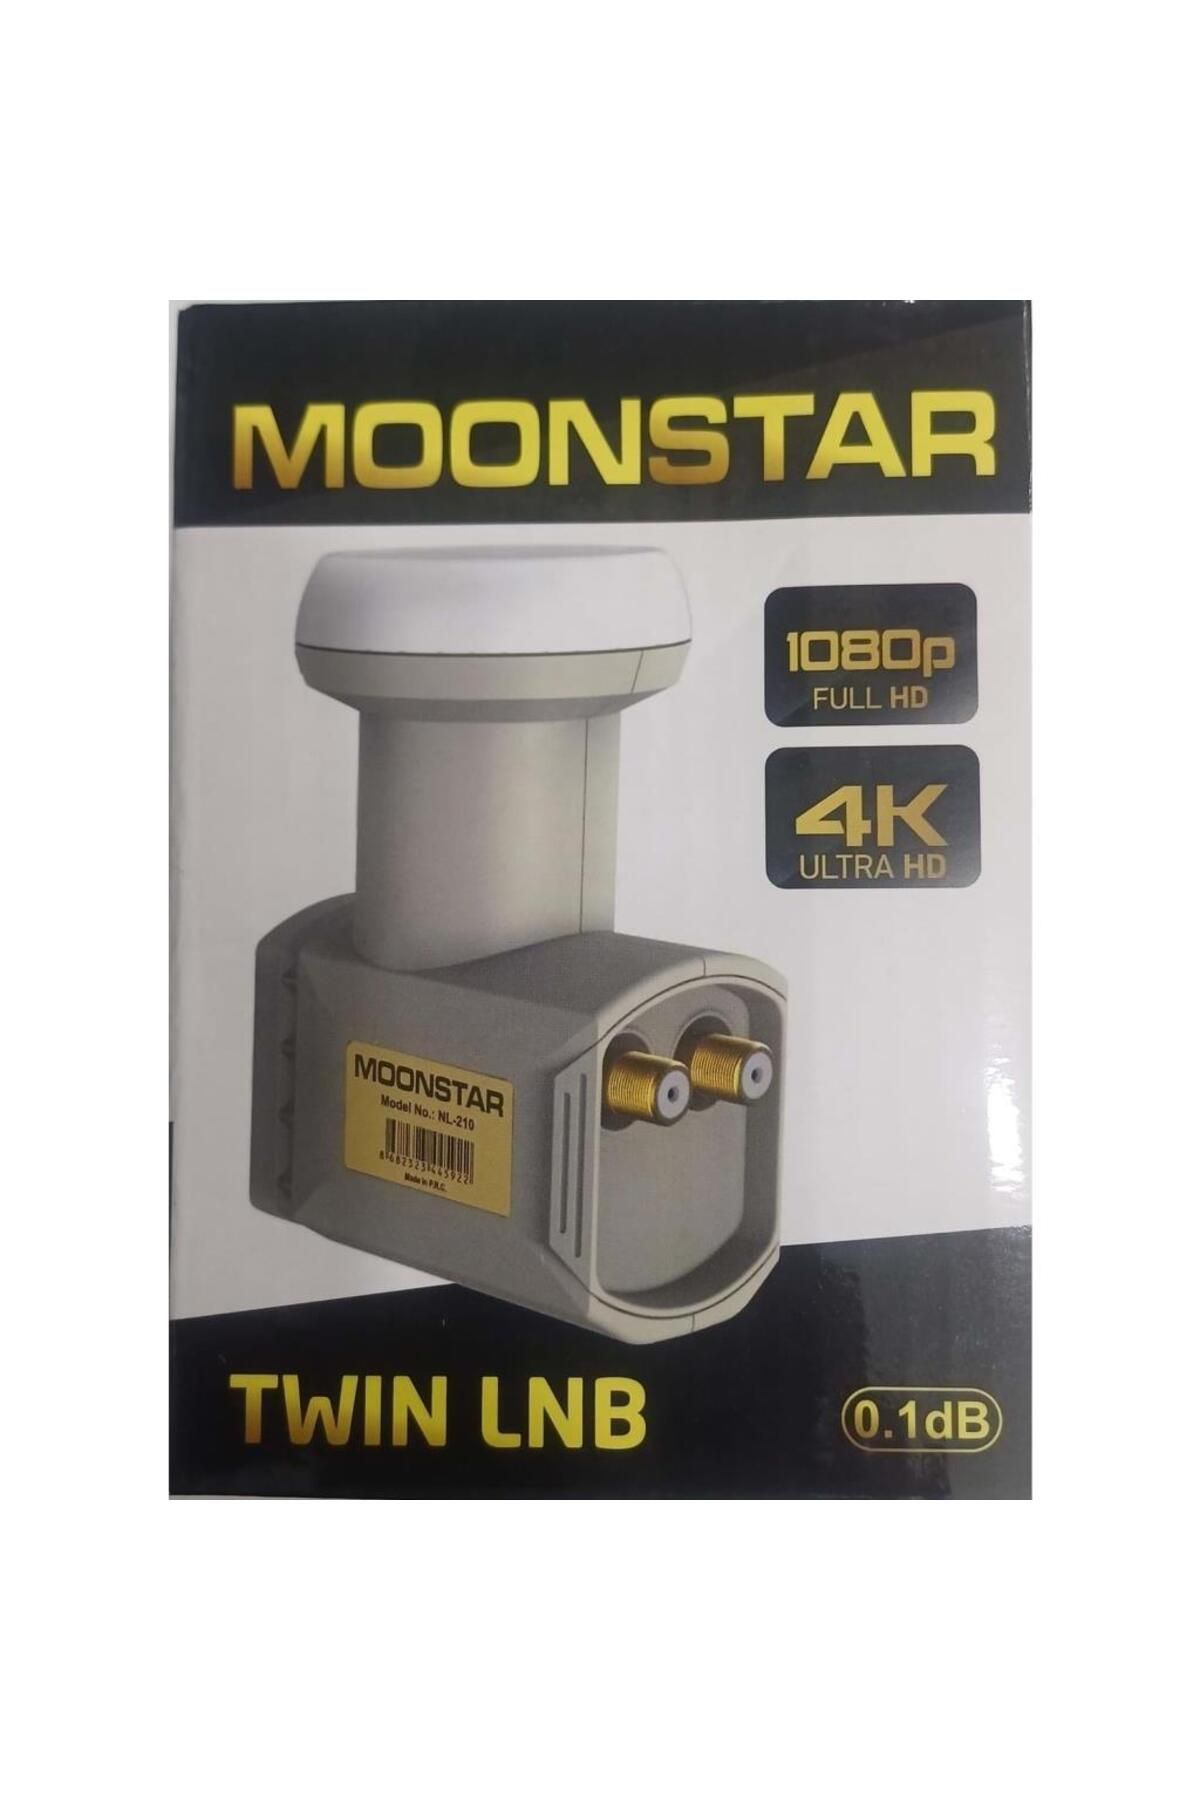 Moonstar NL-210 İkili LNB